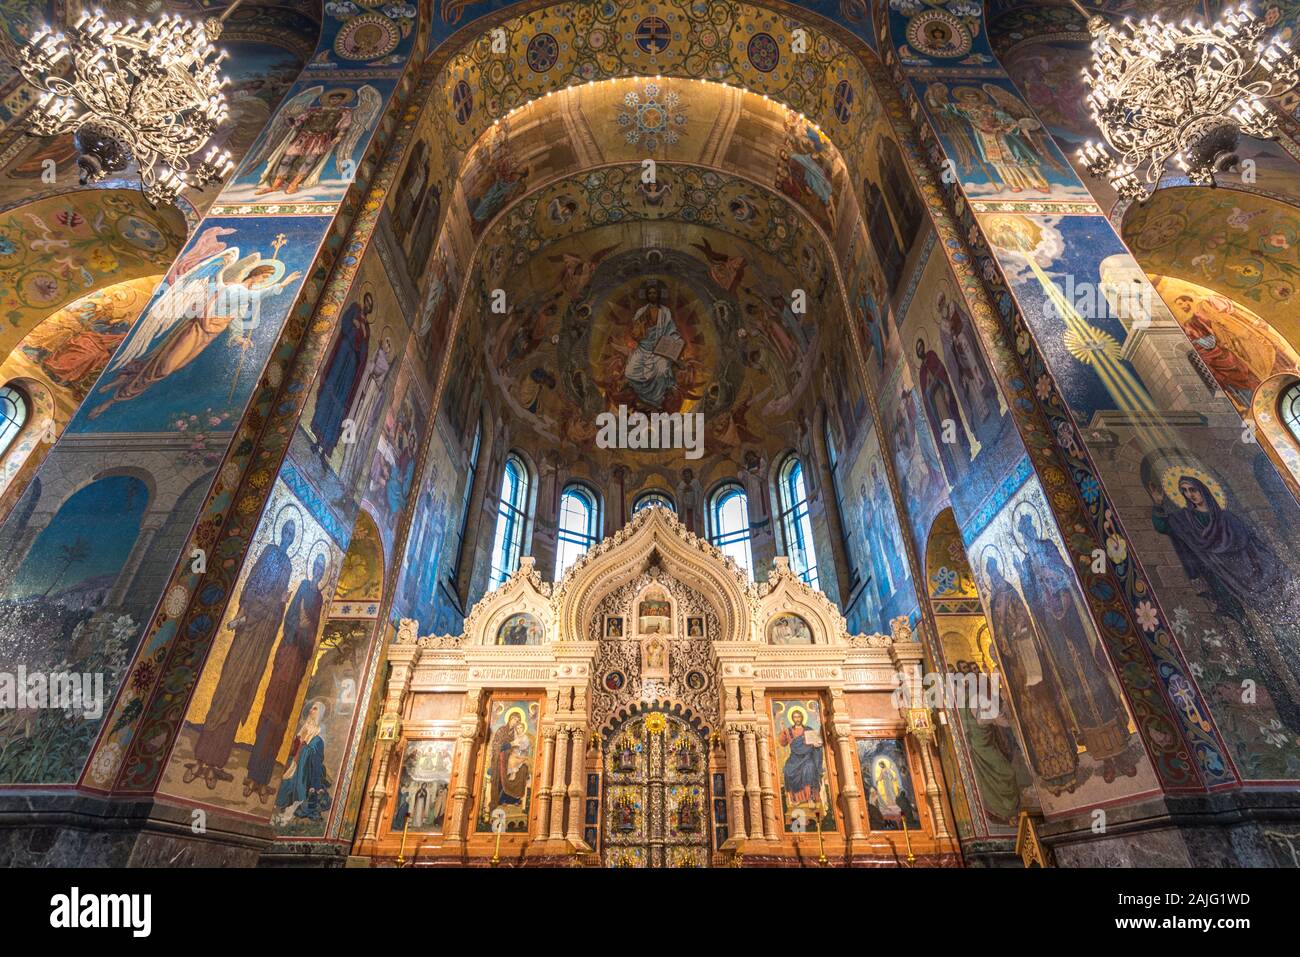 San Petersburgo, Rusia: el interior de la Iglesia del Salvador en la sangre (la sangre derramada) es uno de los principales puntos de interés de San Petersburgo, ángulo de visión amplio Foto de stock